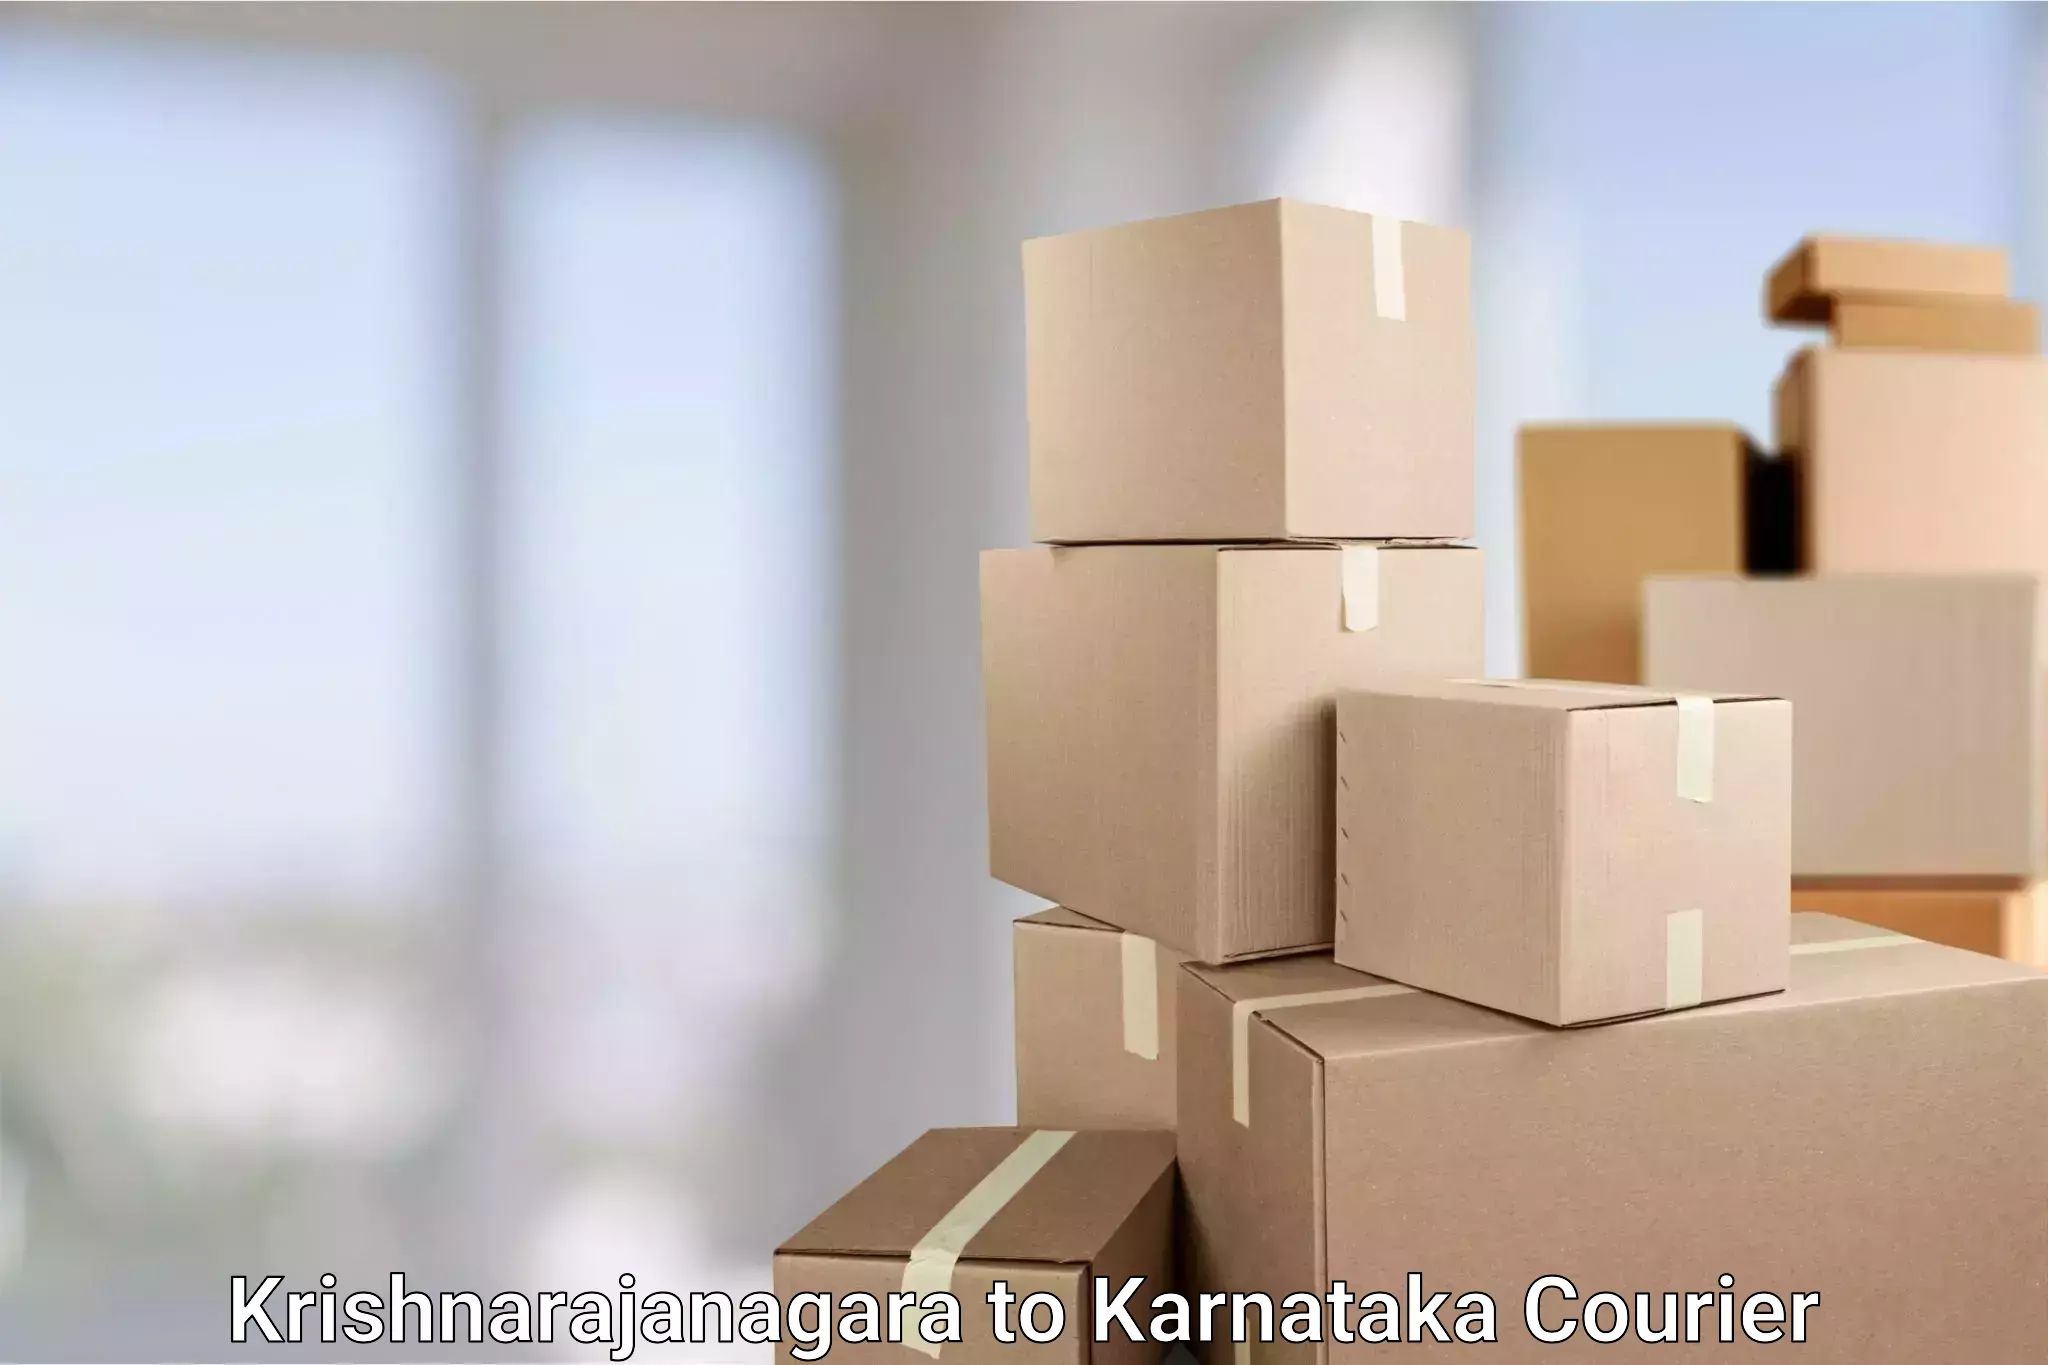 Express mail service Krishnarajanagara to Karnataka